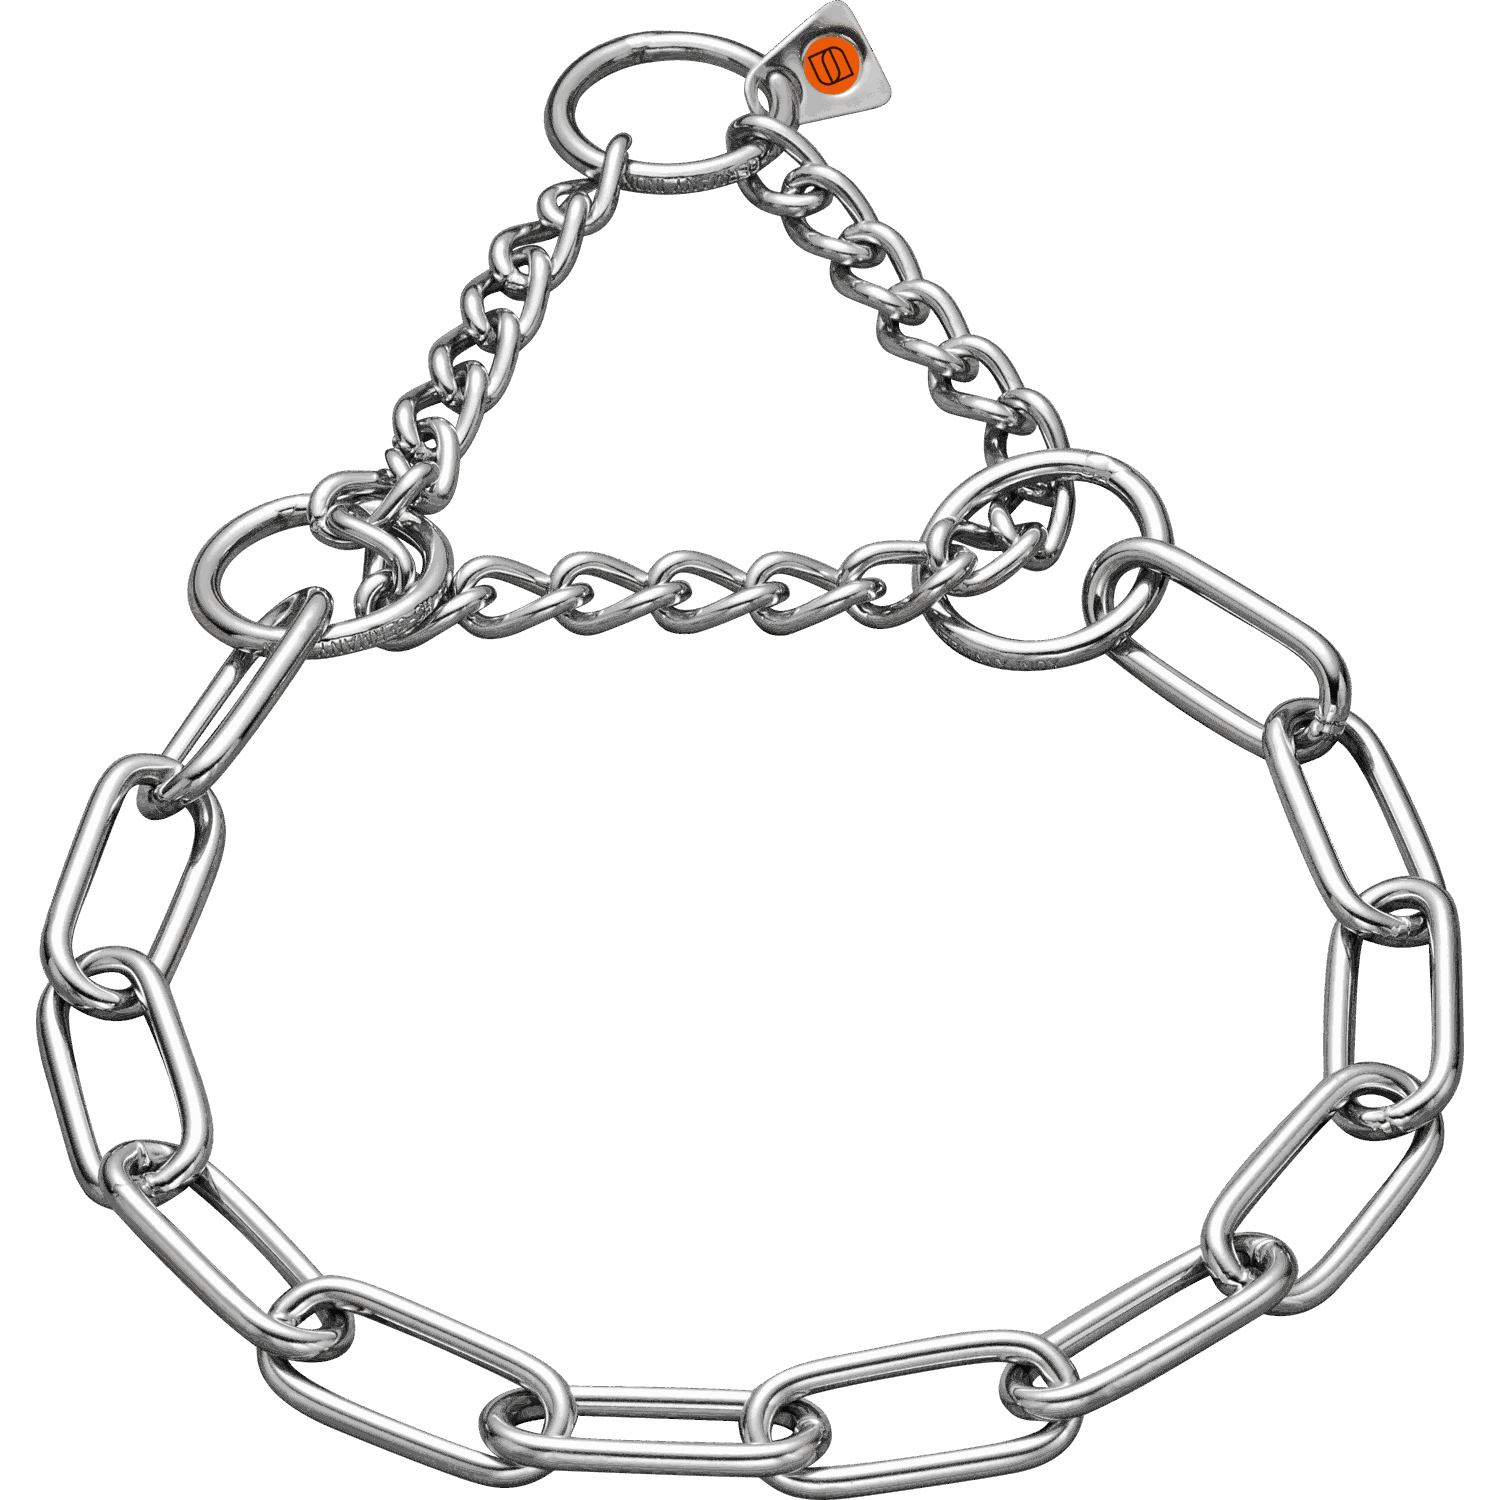 Halskette mit Zugbegrenzung - Edelstahl Rostfrei, 4,0 mm | 51682_55.png | 1700898264